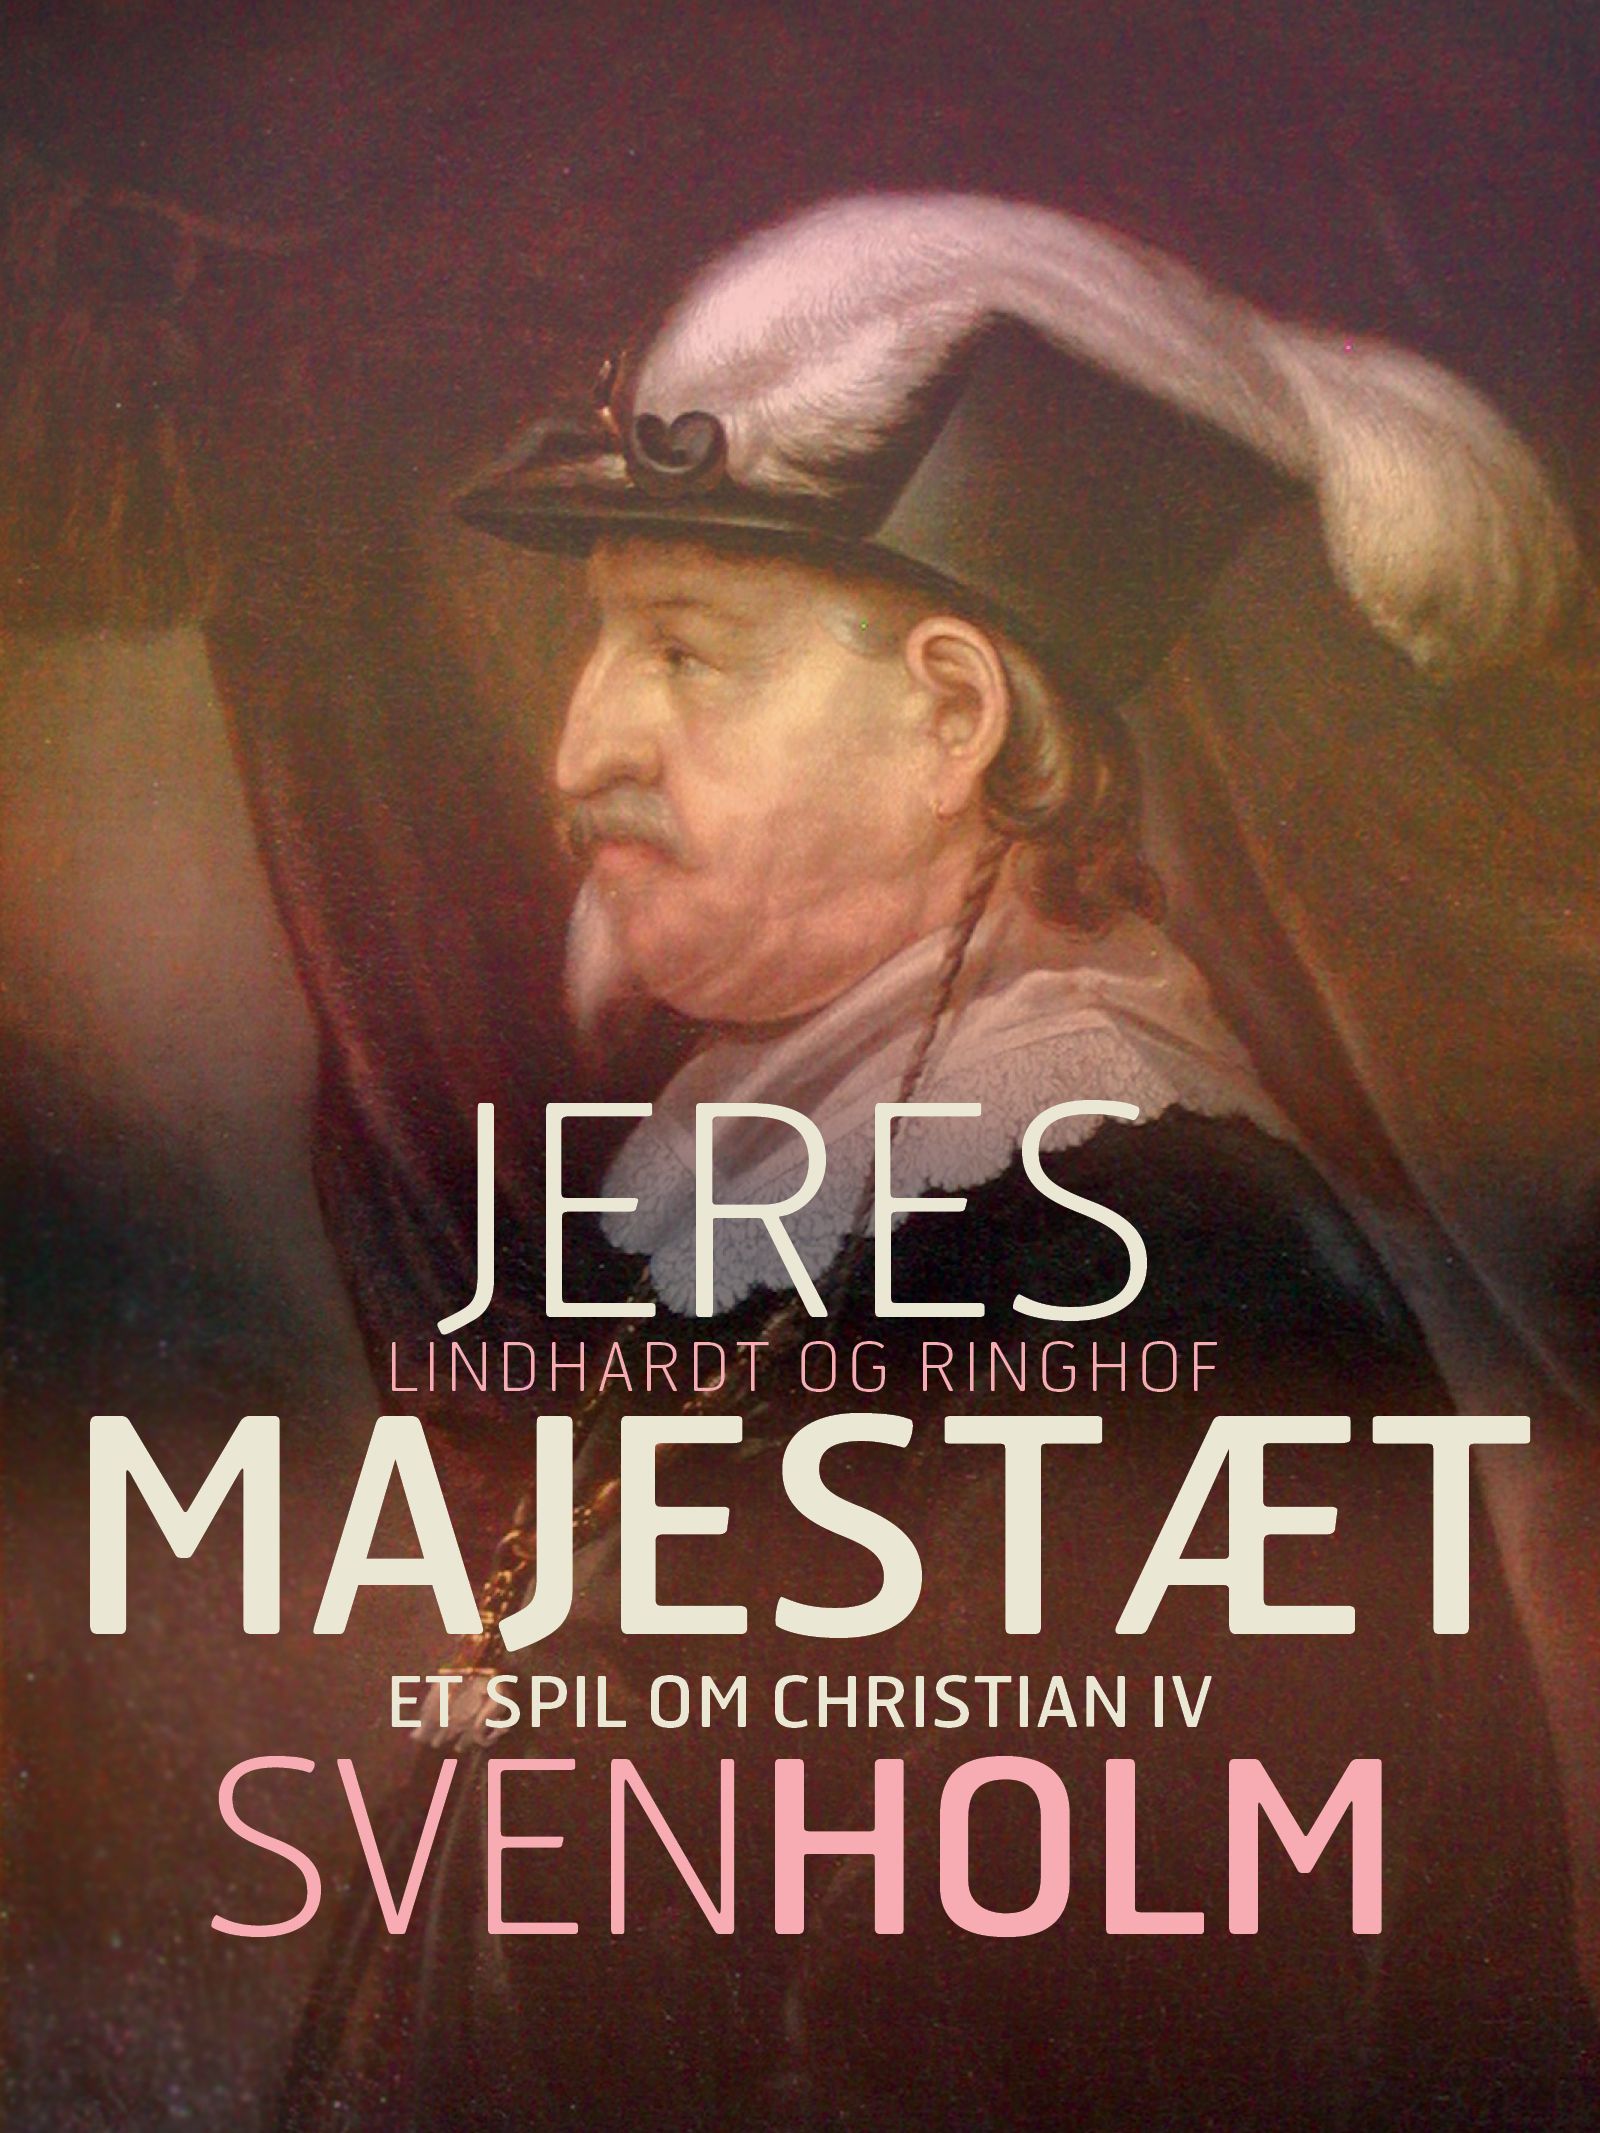 Jeres majestæt, eBook by Sven Holm